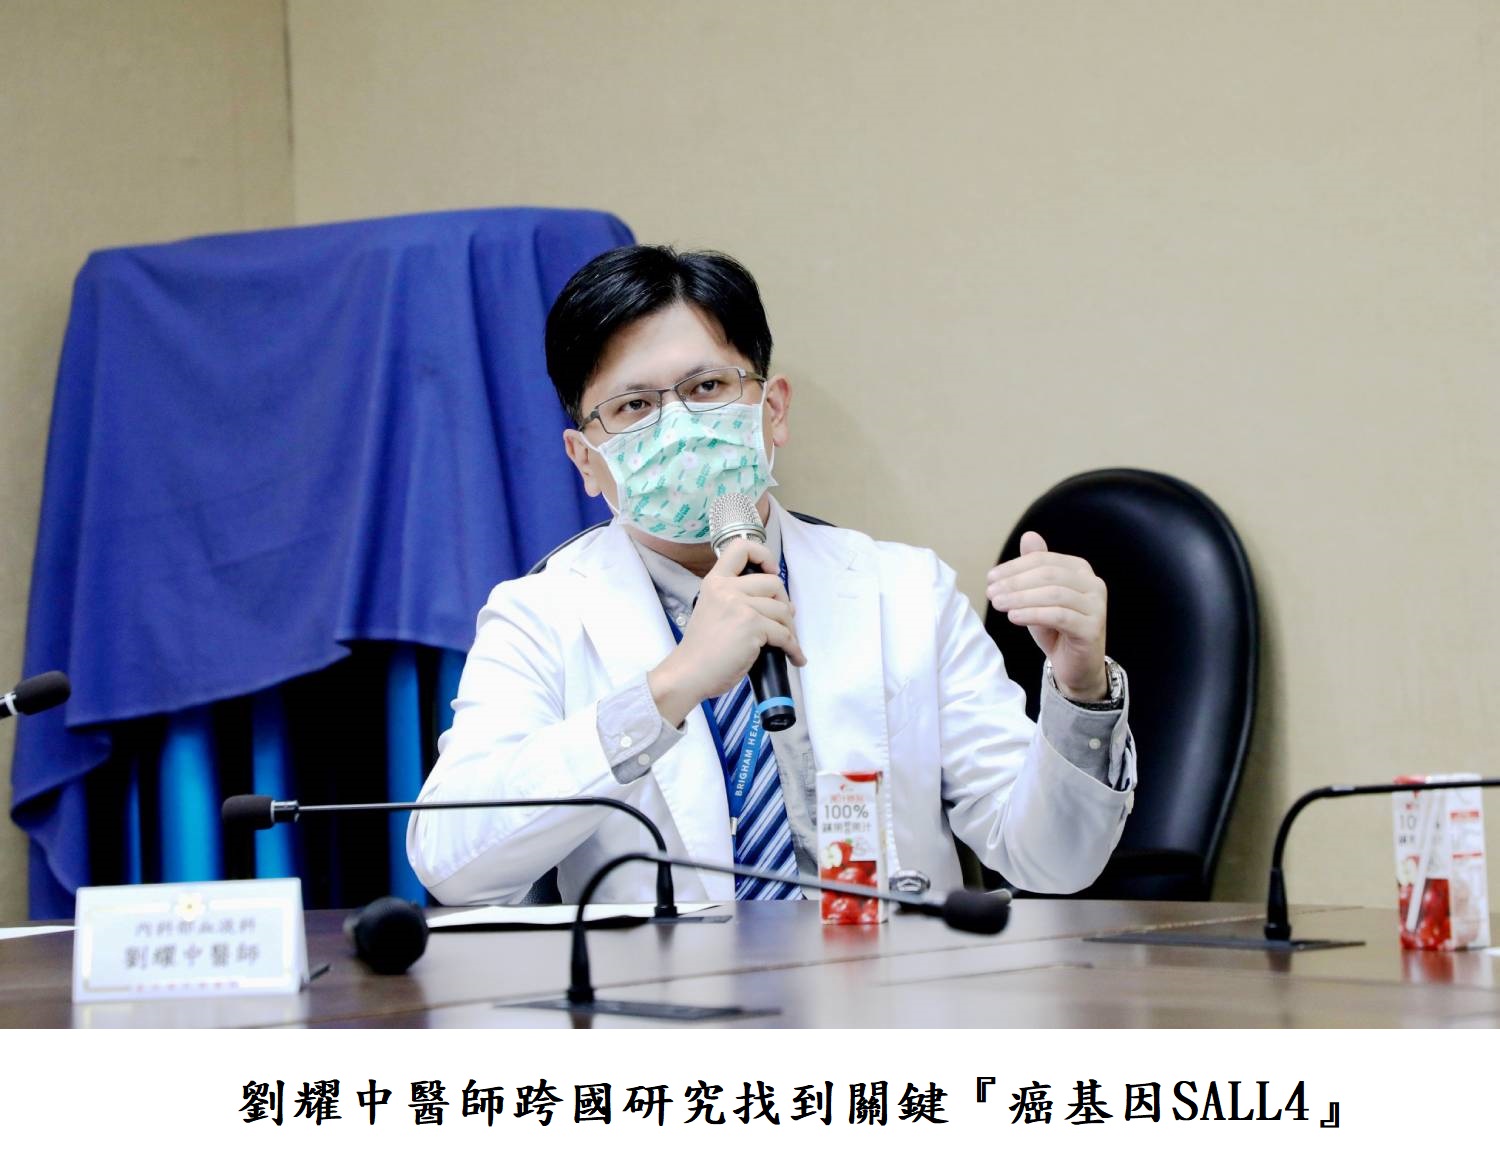 劉耀中醫師跨國研究找到關鍵『癌基因SALL4』